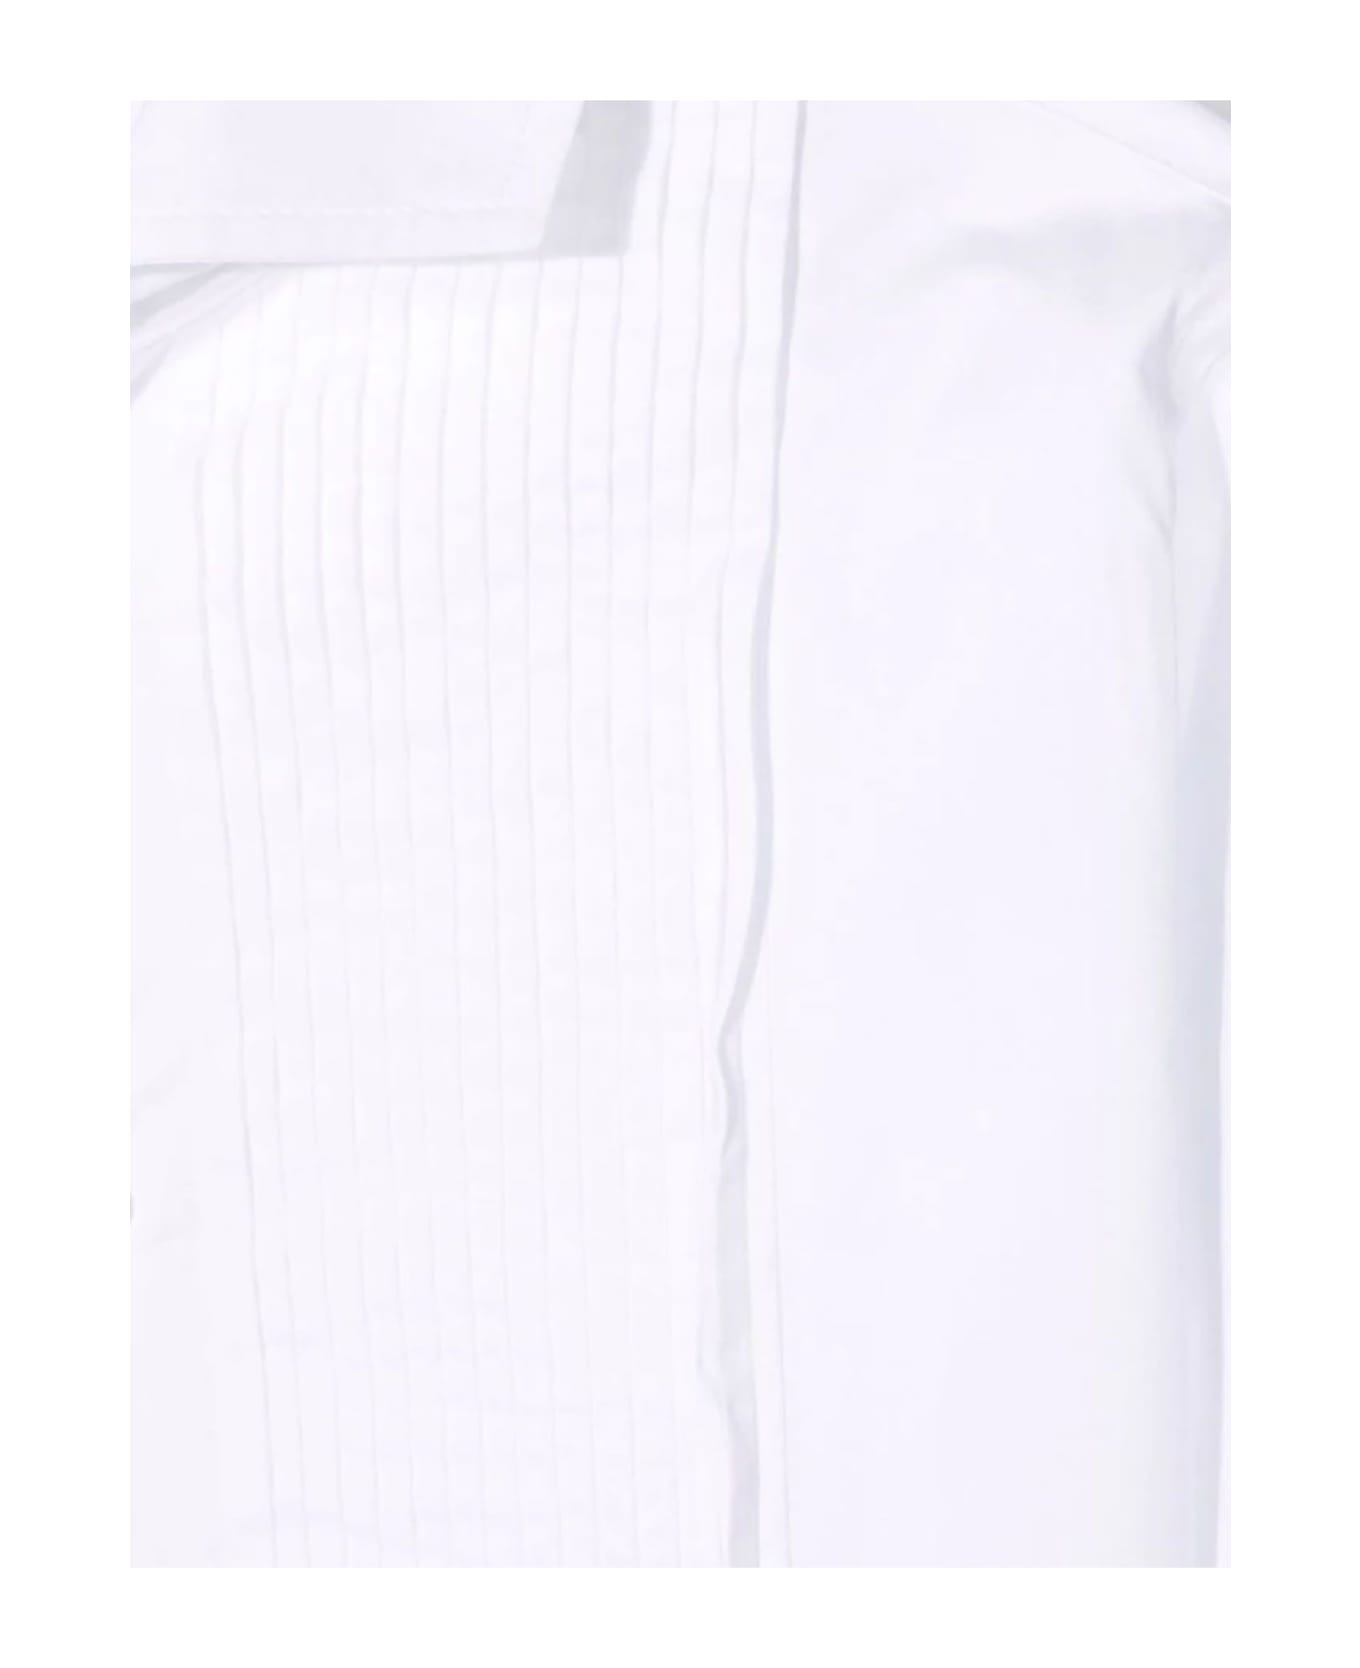 Brunello Cucinelli White Cotton Shirt - Bianco